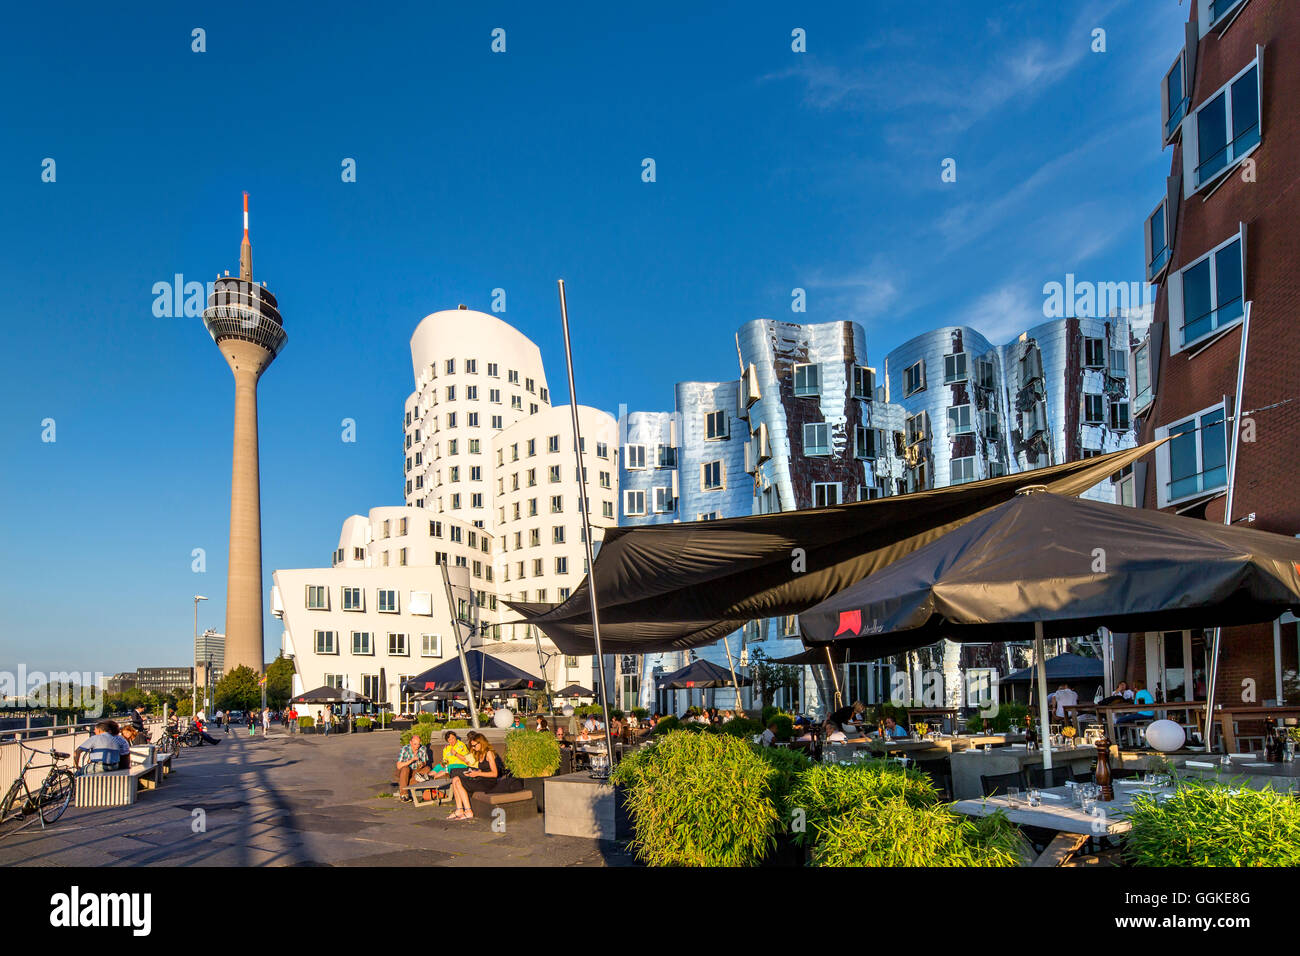 Cafe mit Frank Gehry-Bauten im Hintergrund, Neuer Zollhof, Medien-Hafen, Düsseldorf, Nord Rhein Westfalen, Deutschland Stockfoto